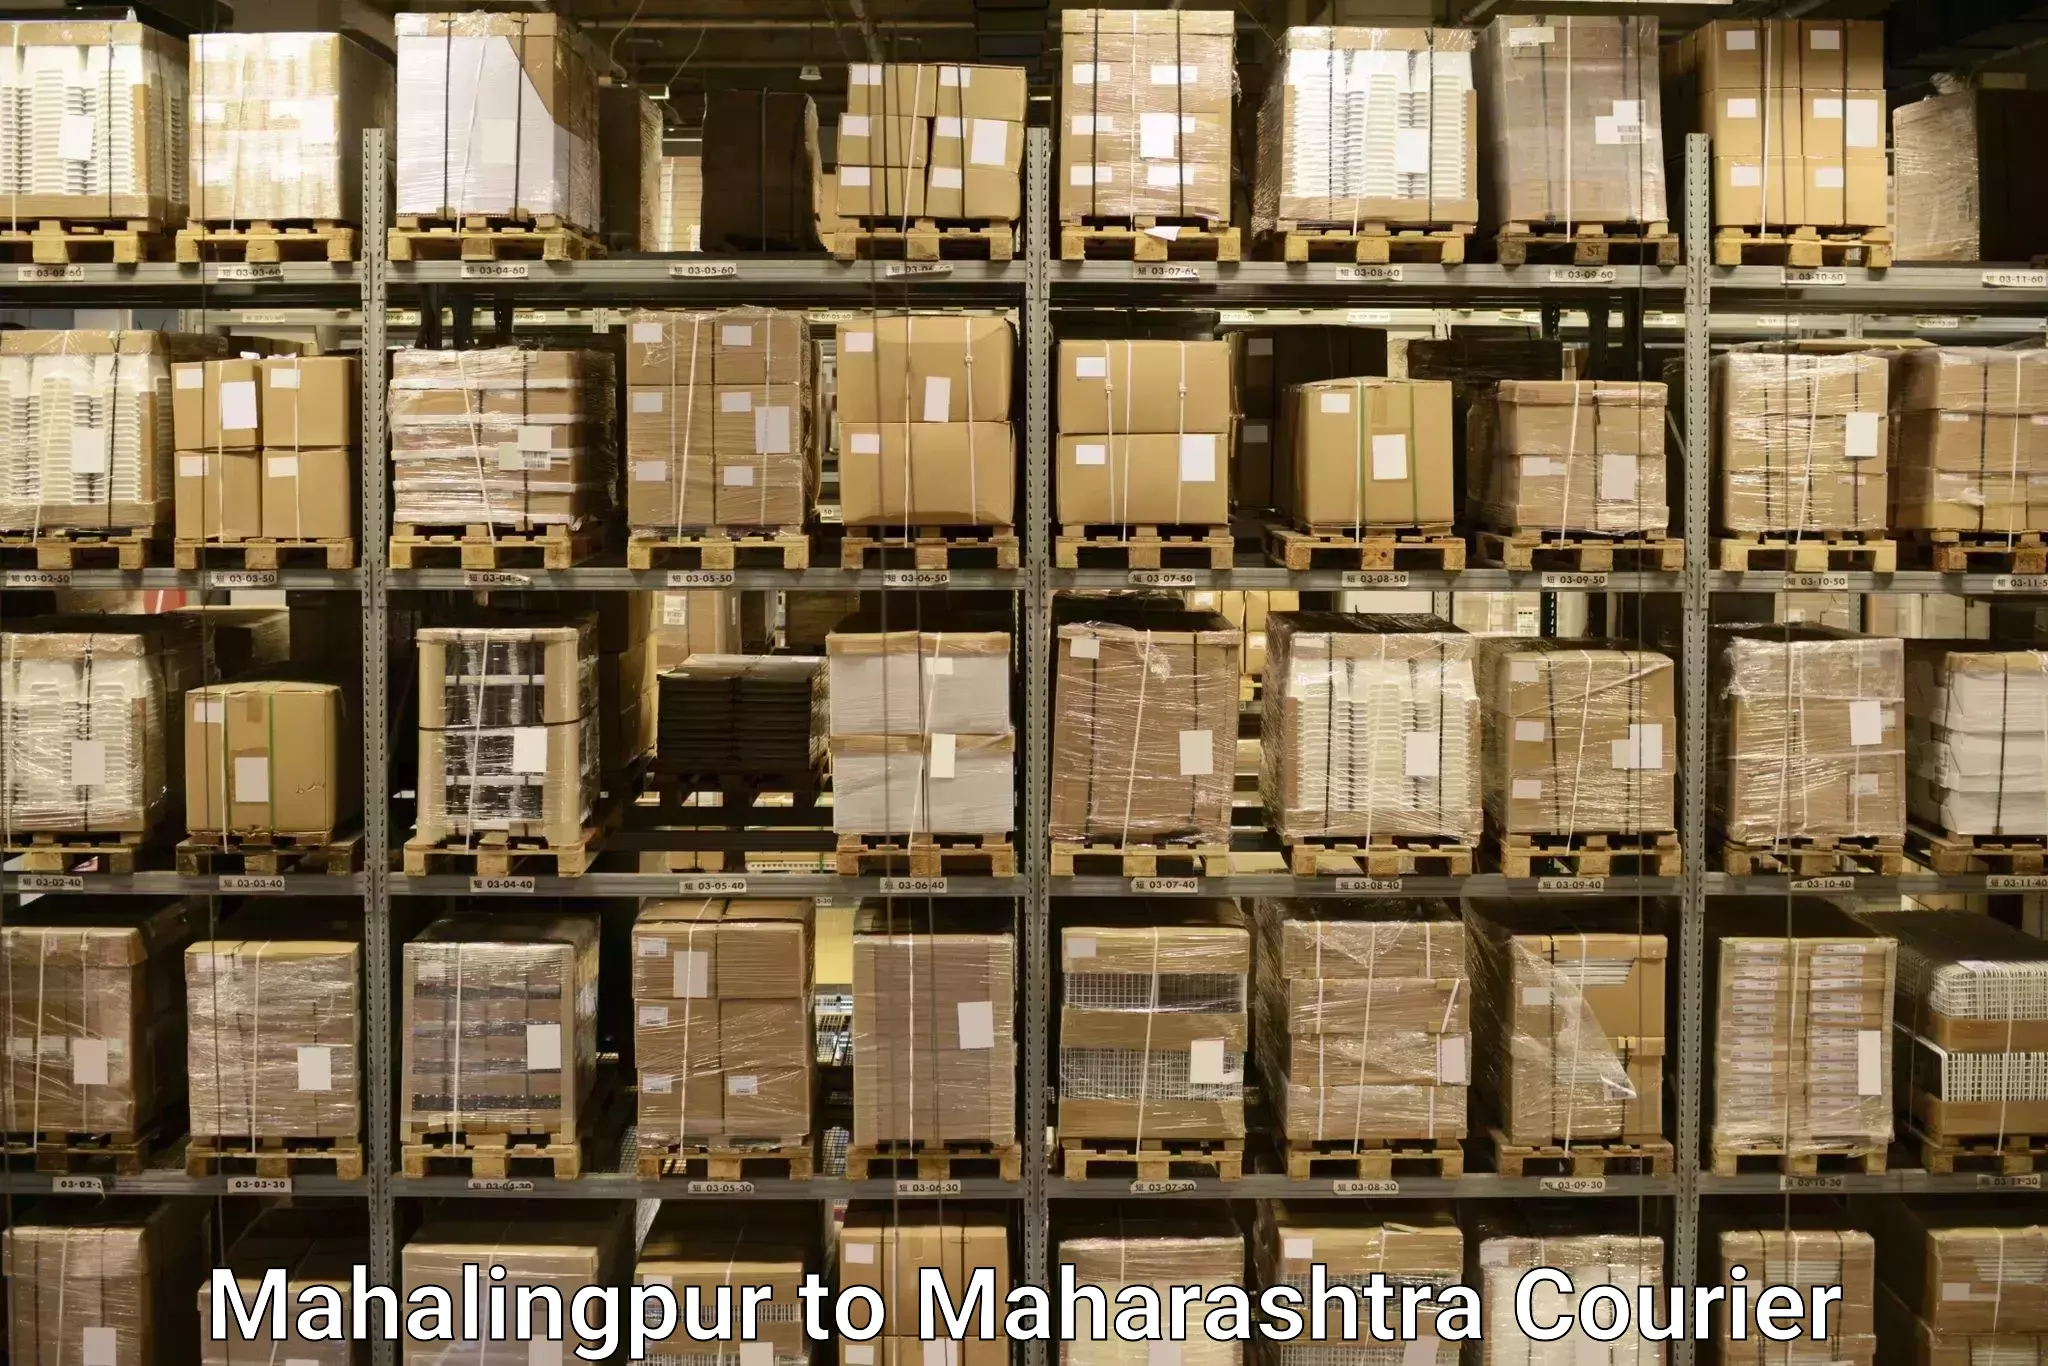 Baggage shipping service Mahalingpur to Ashti